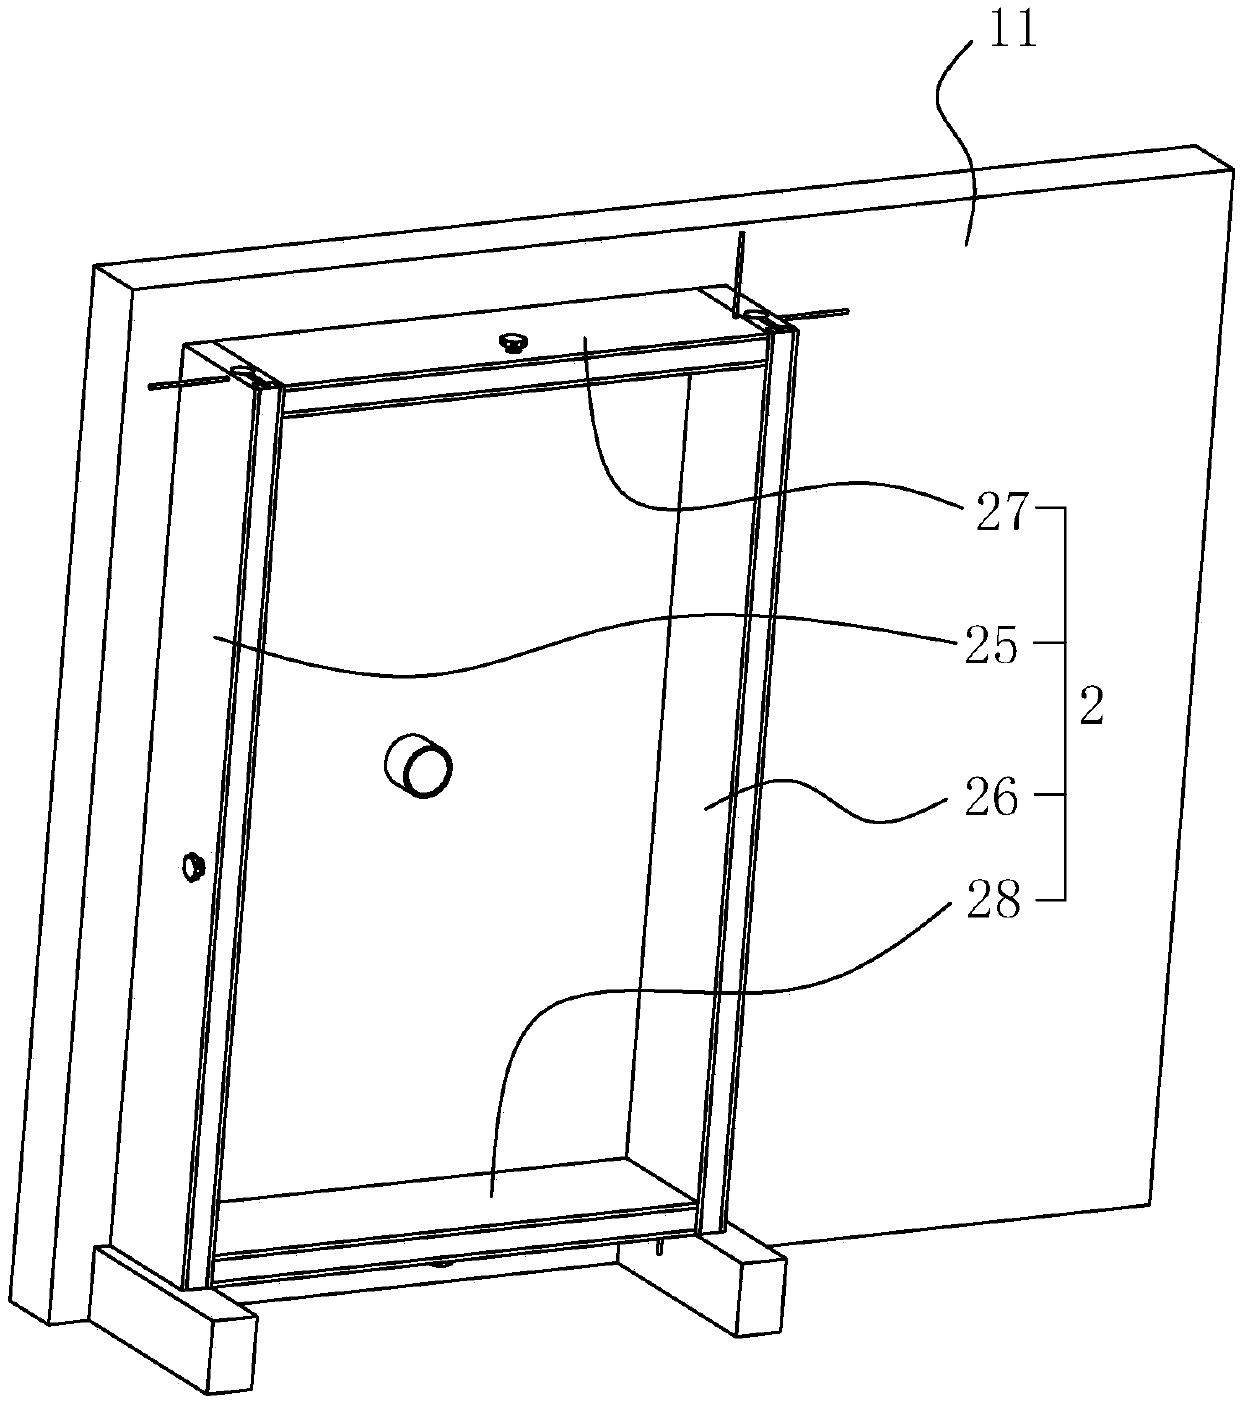 Indoor door and window detector for effectively improving measurement accuracy